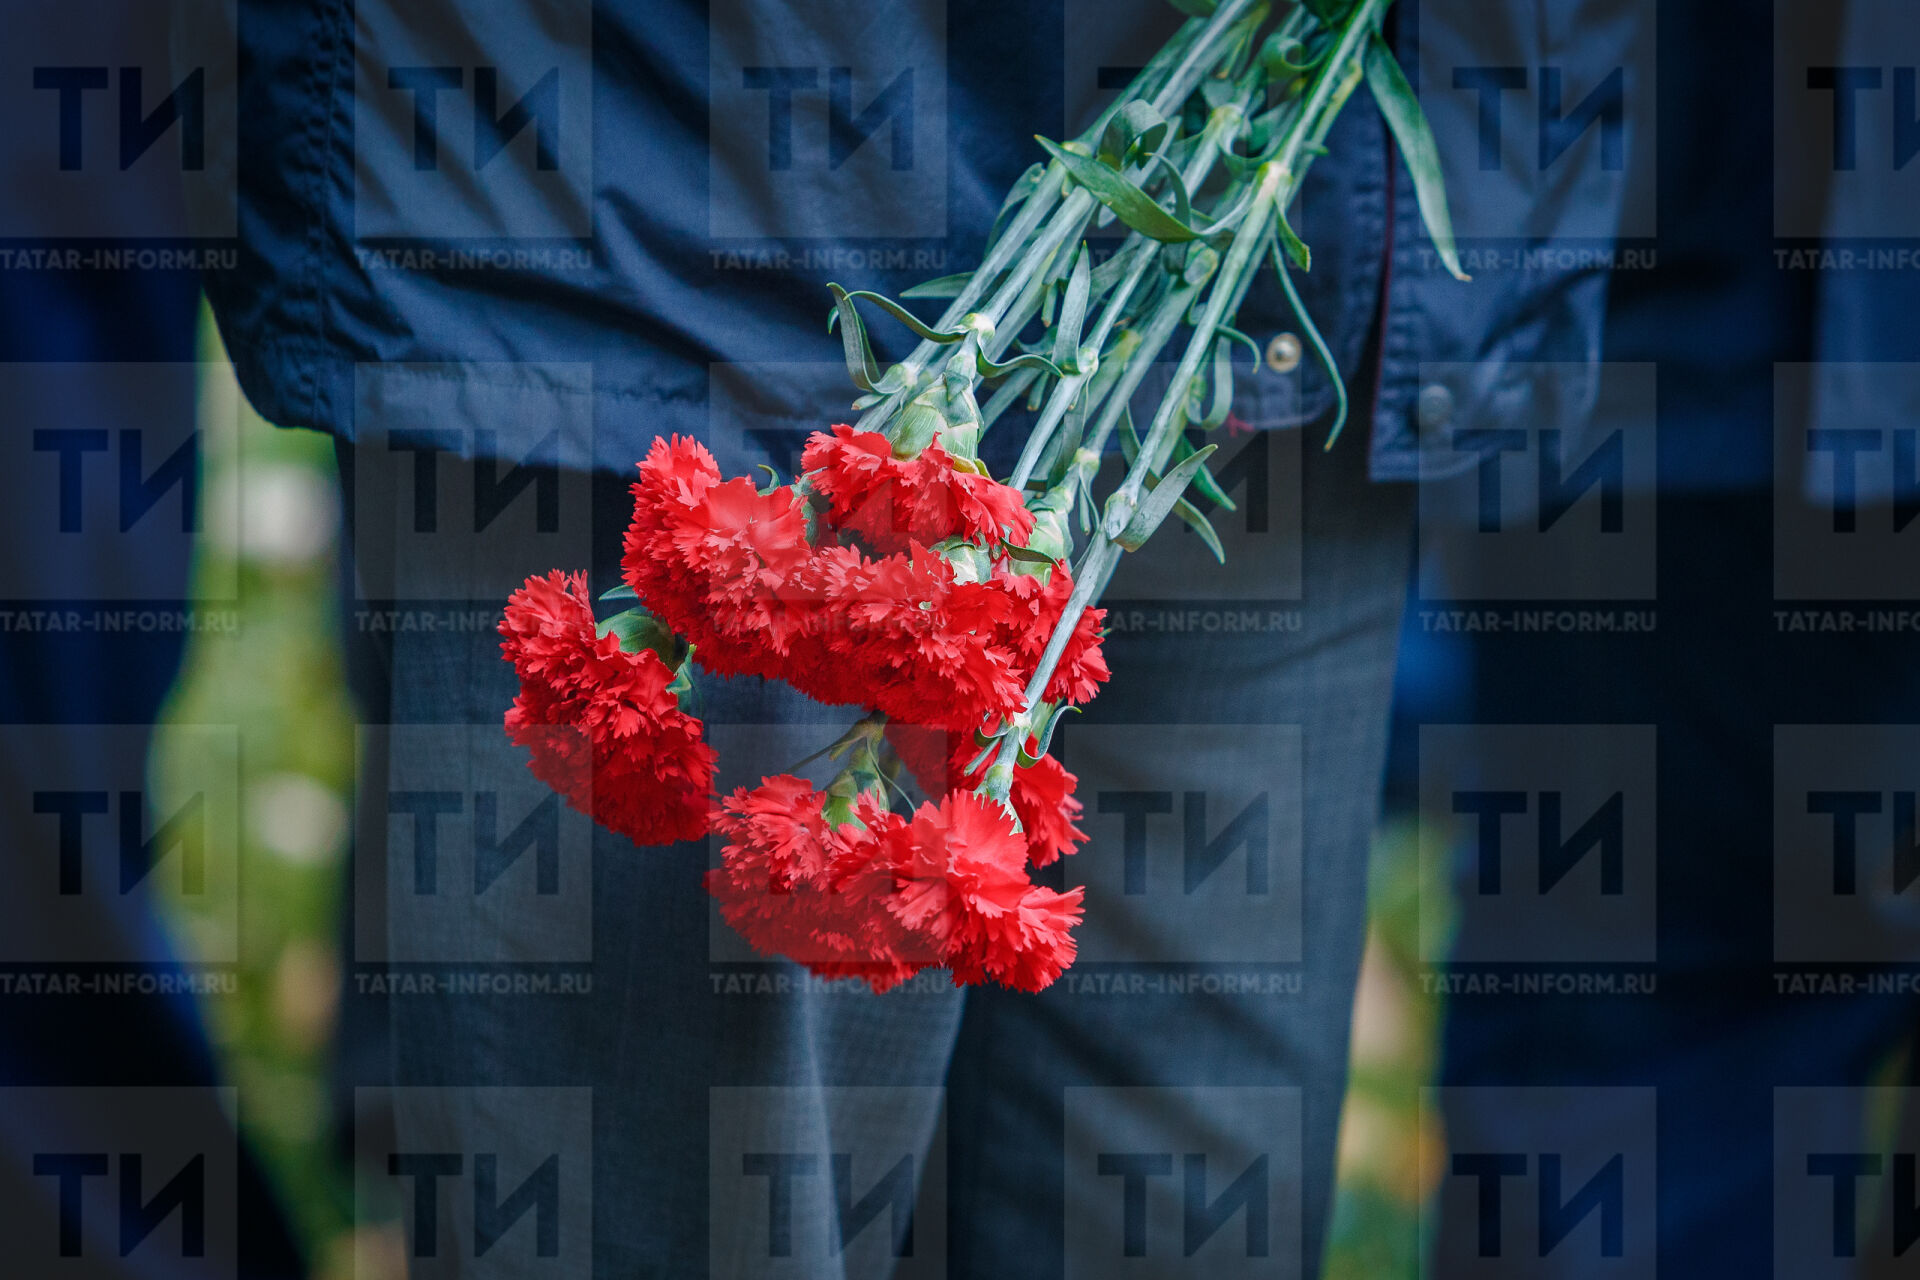 Жители Татарстана смогут принять участие в акции «Красная гвоздика» и оказать помощь ветеранам